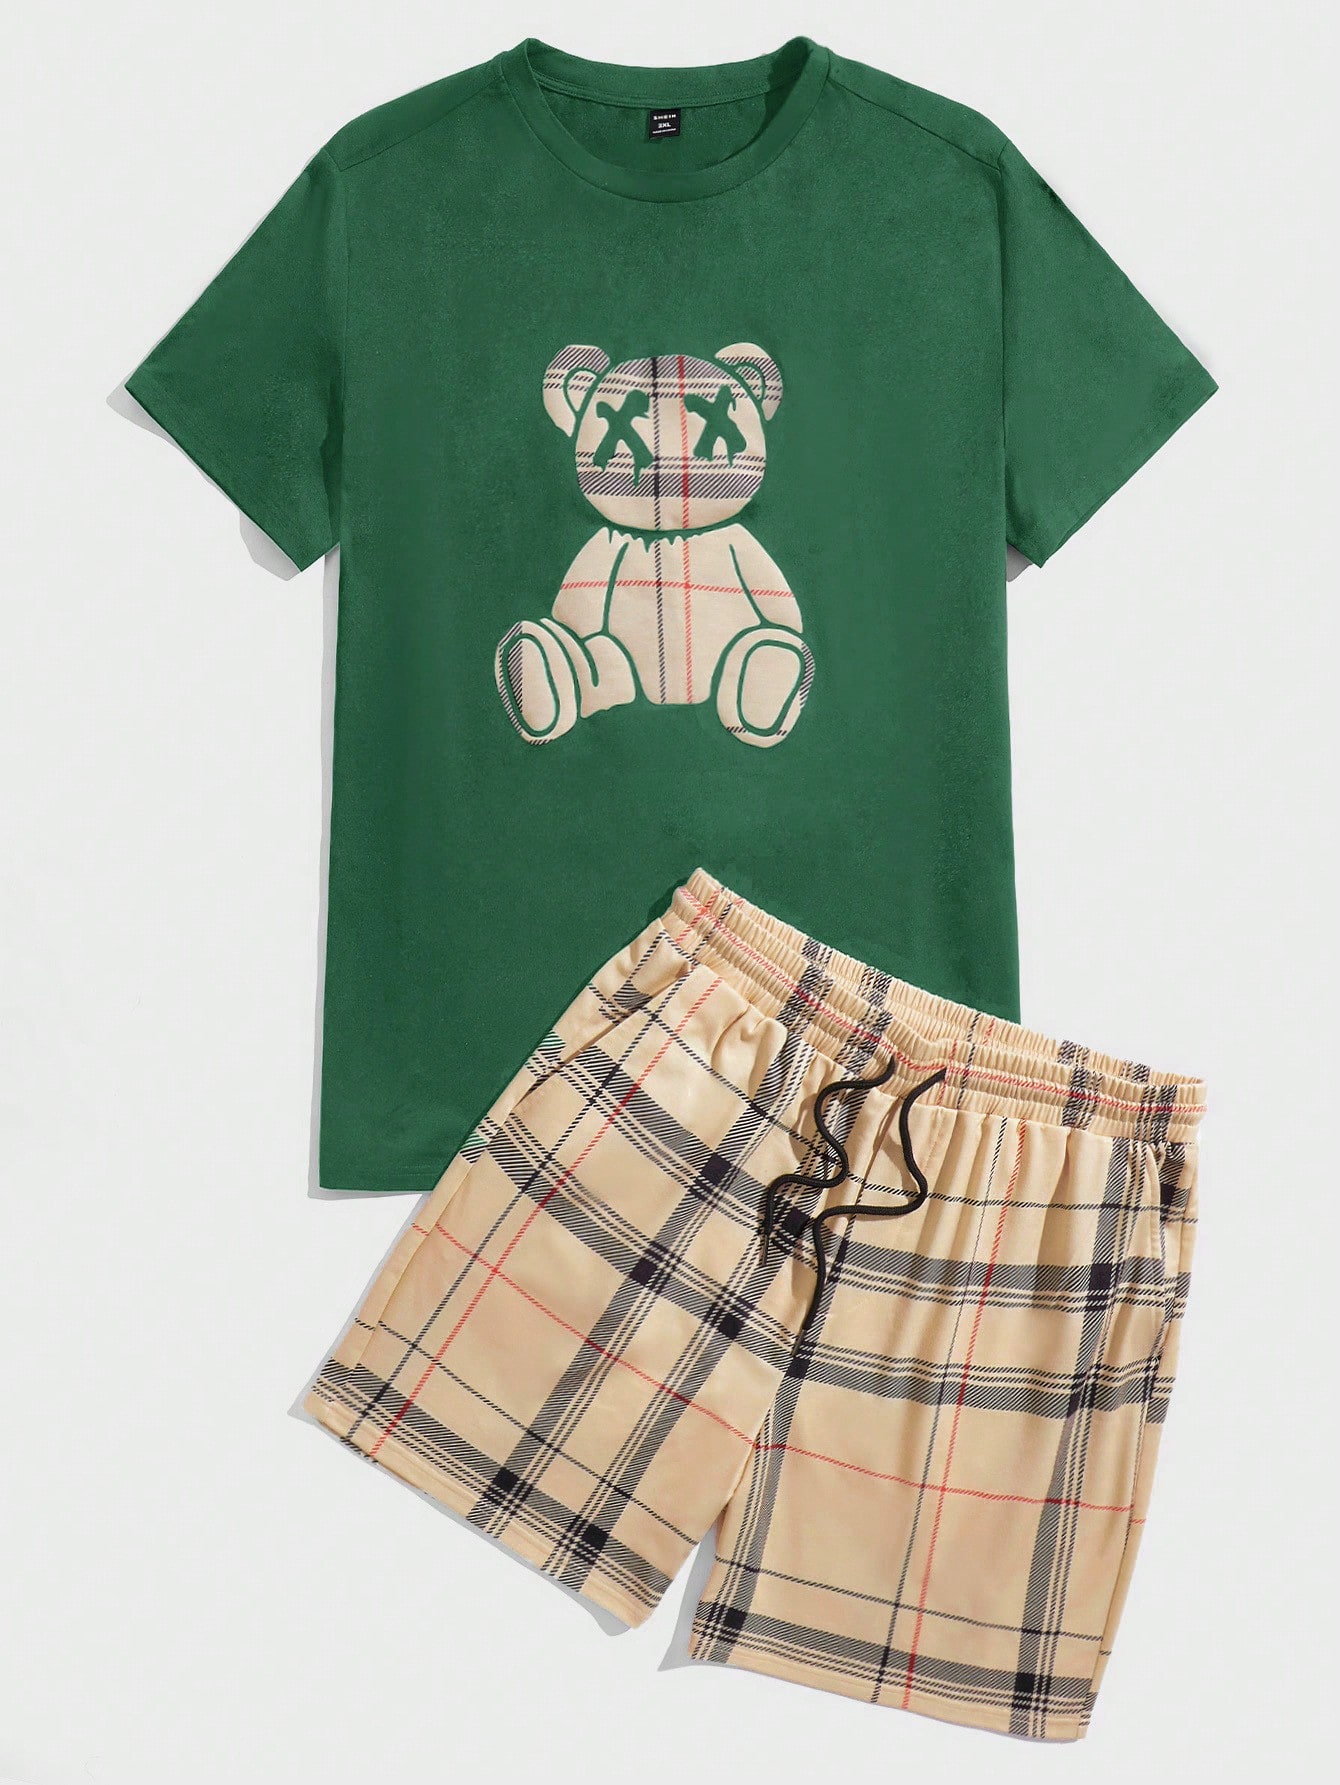 Manfinity Hypemode Мужская футболка и шорты в клетку с мультяшным принтом больших размеров, темно-зеленый